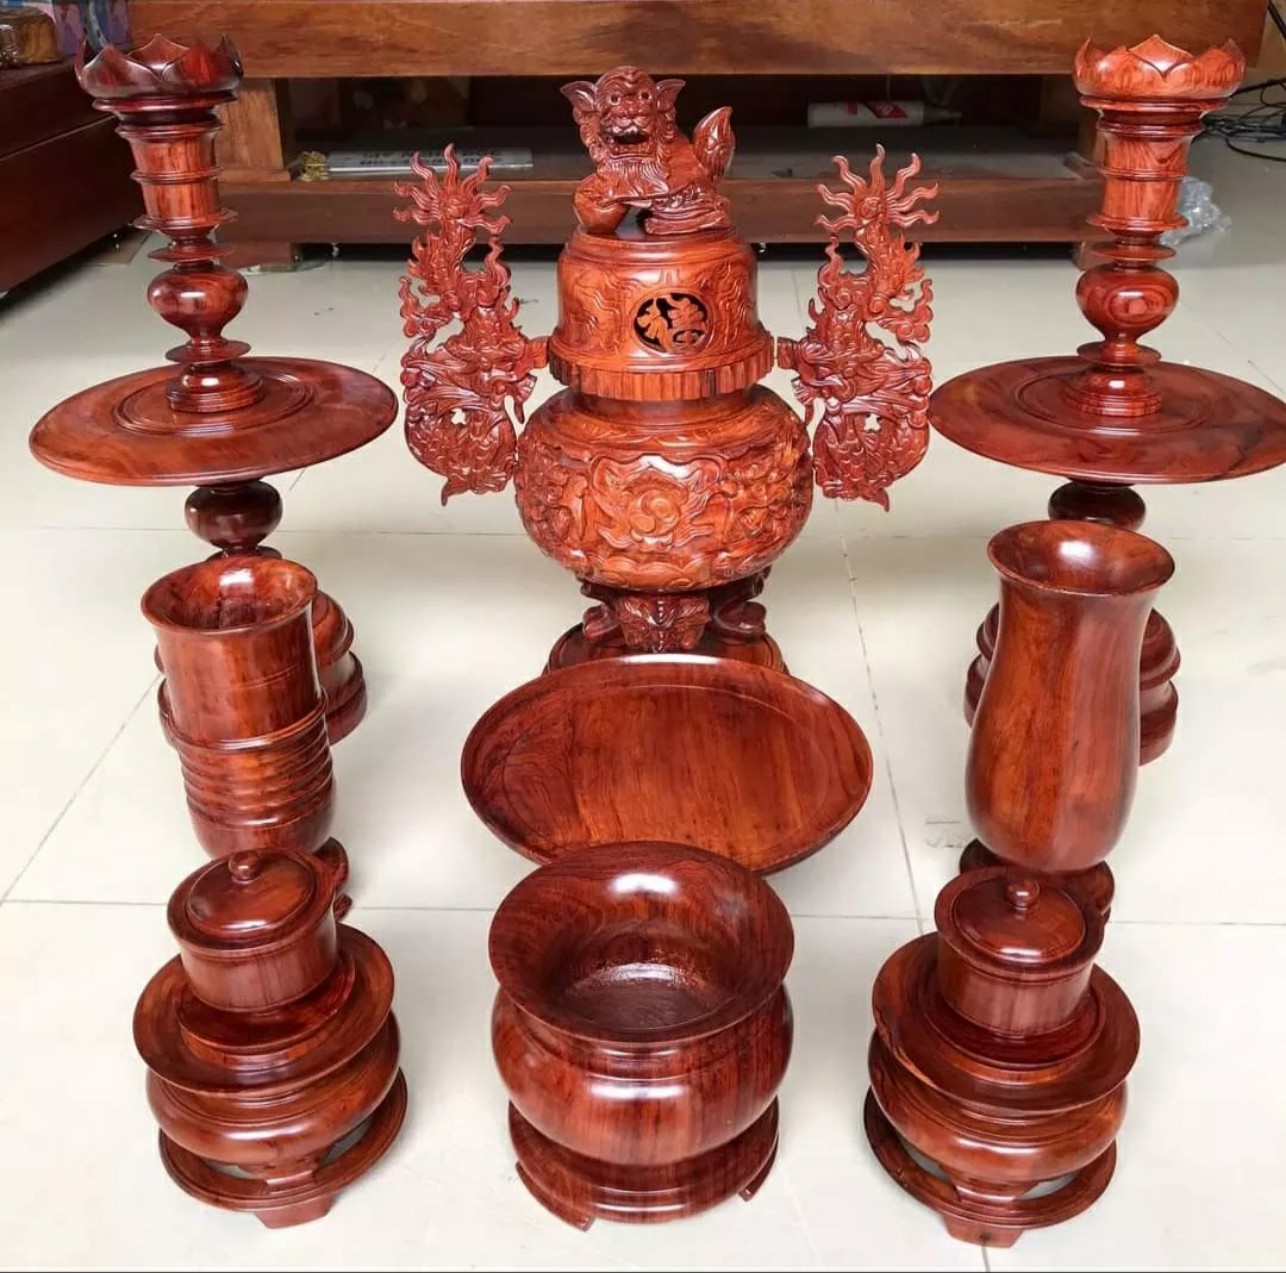 Bộ đồ thờ cúng 9 món gỗ hương cao 50 cm